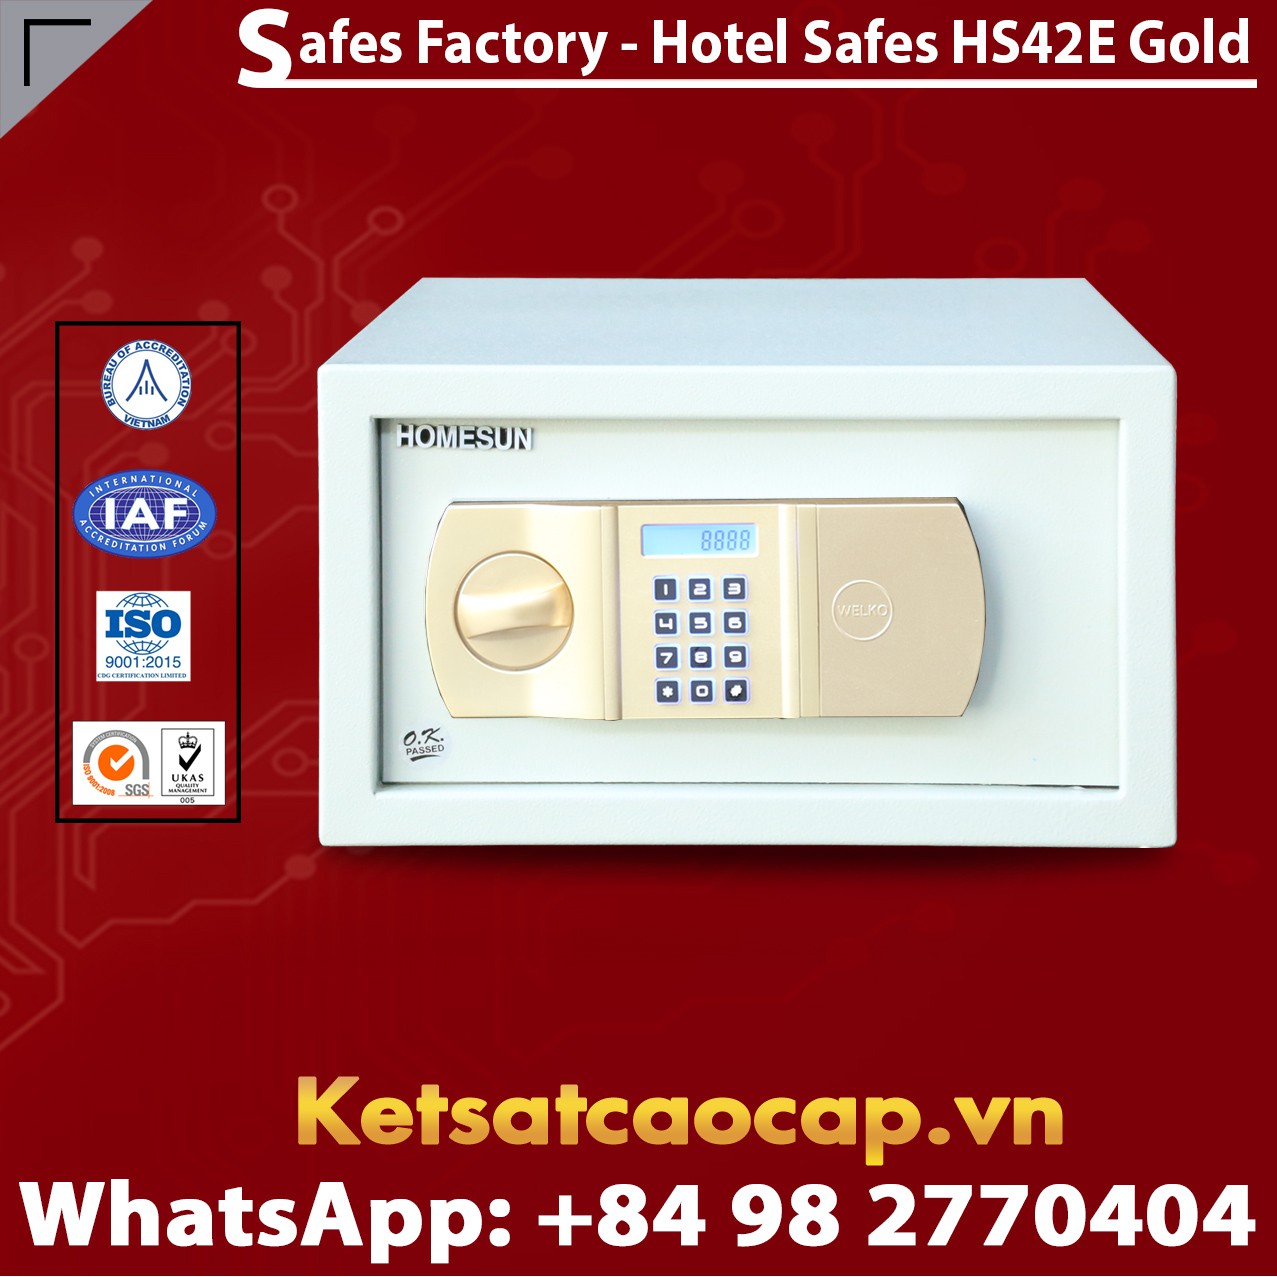 Két Sắt Khách Sạn Hotel Safes WELKO HS42 E Gold